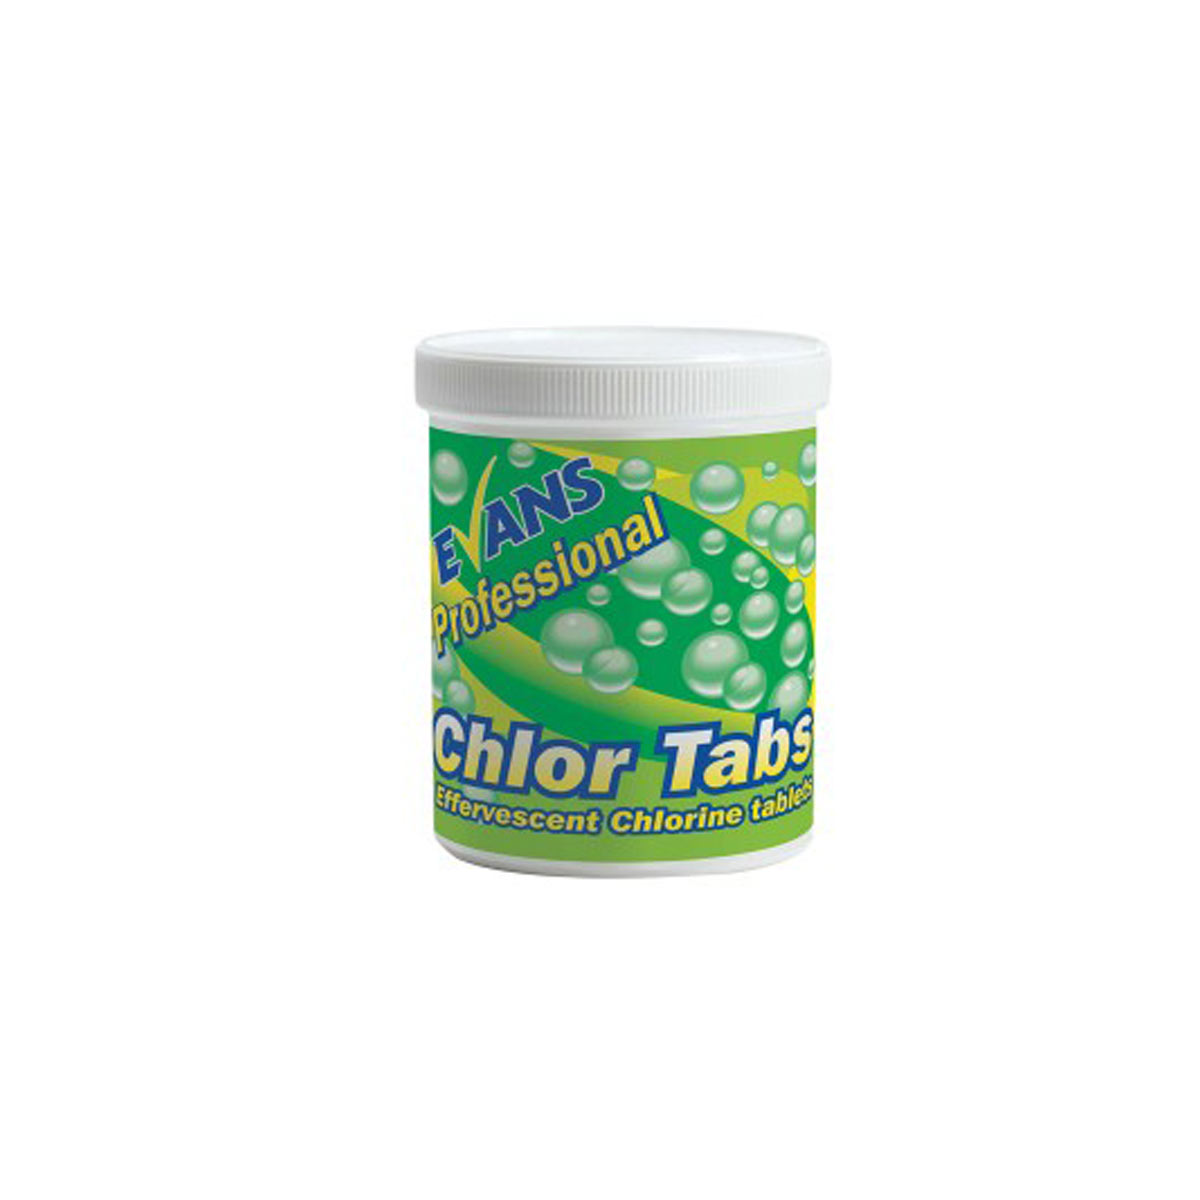 Chlor Tabs - Chlorine tablets